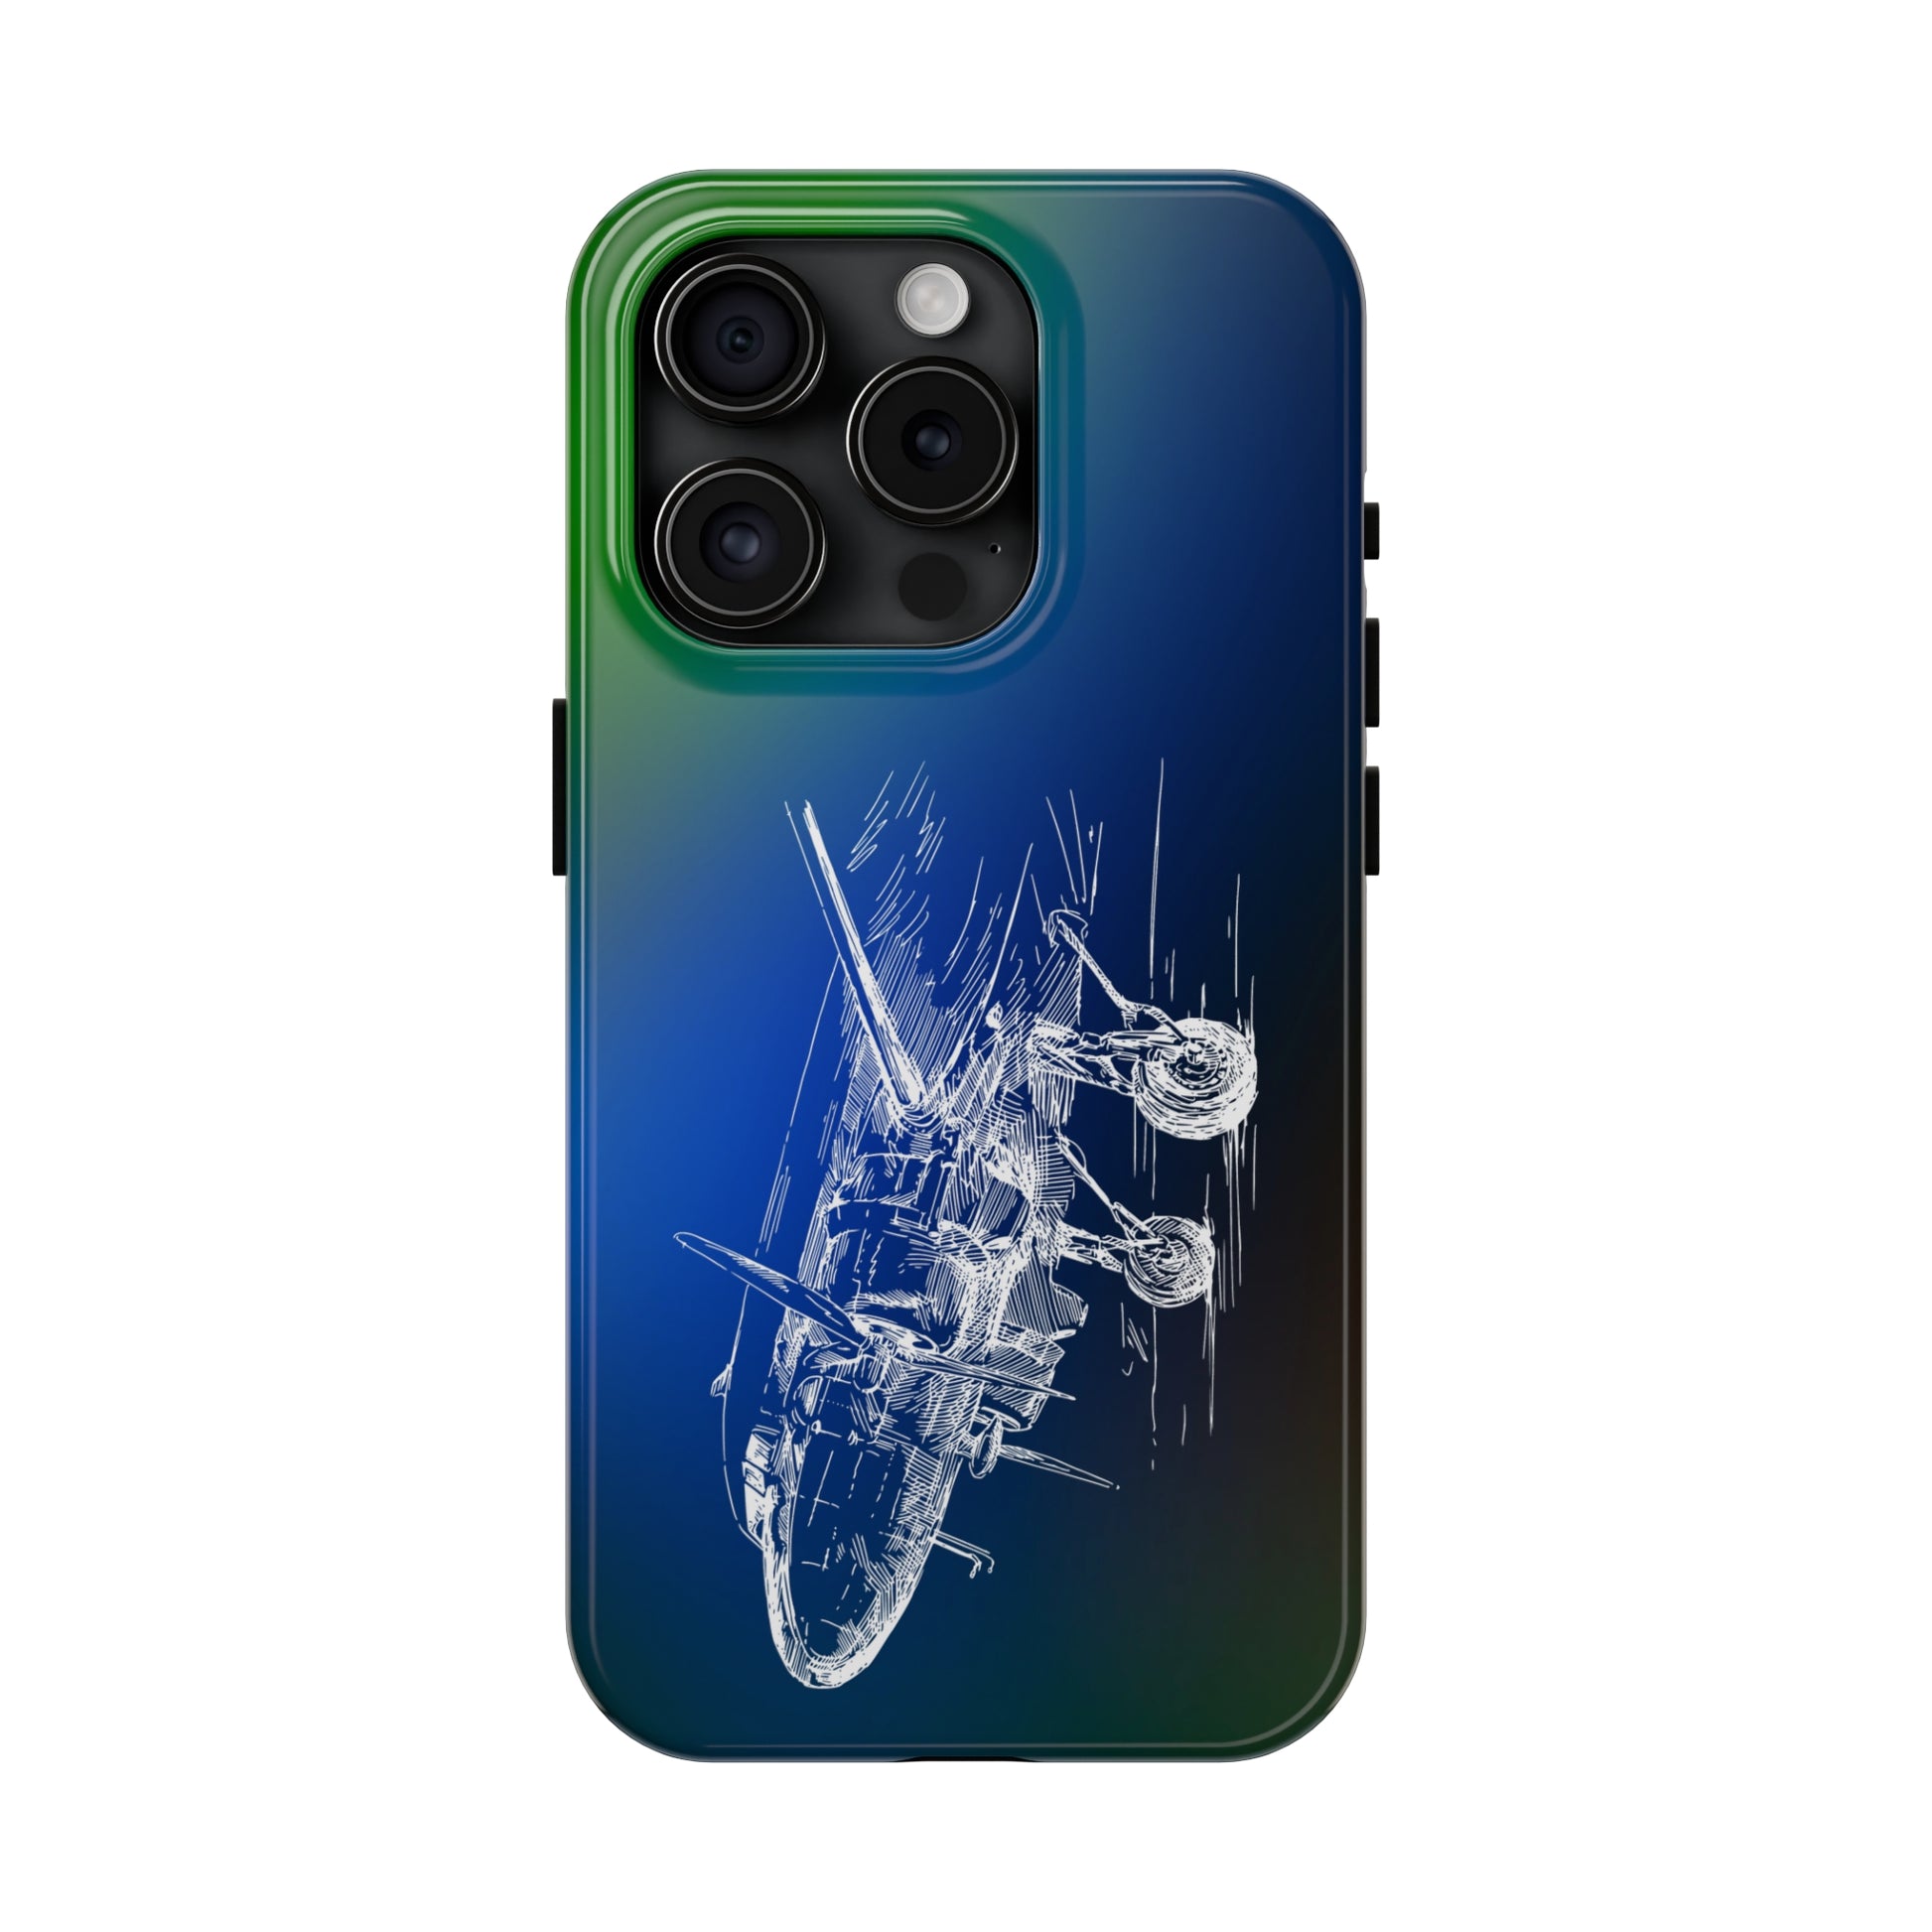 Aero 3 (bluish) tough phone cases